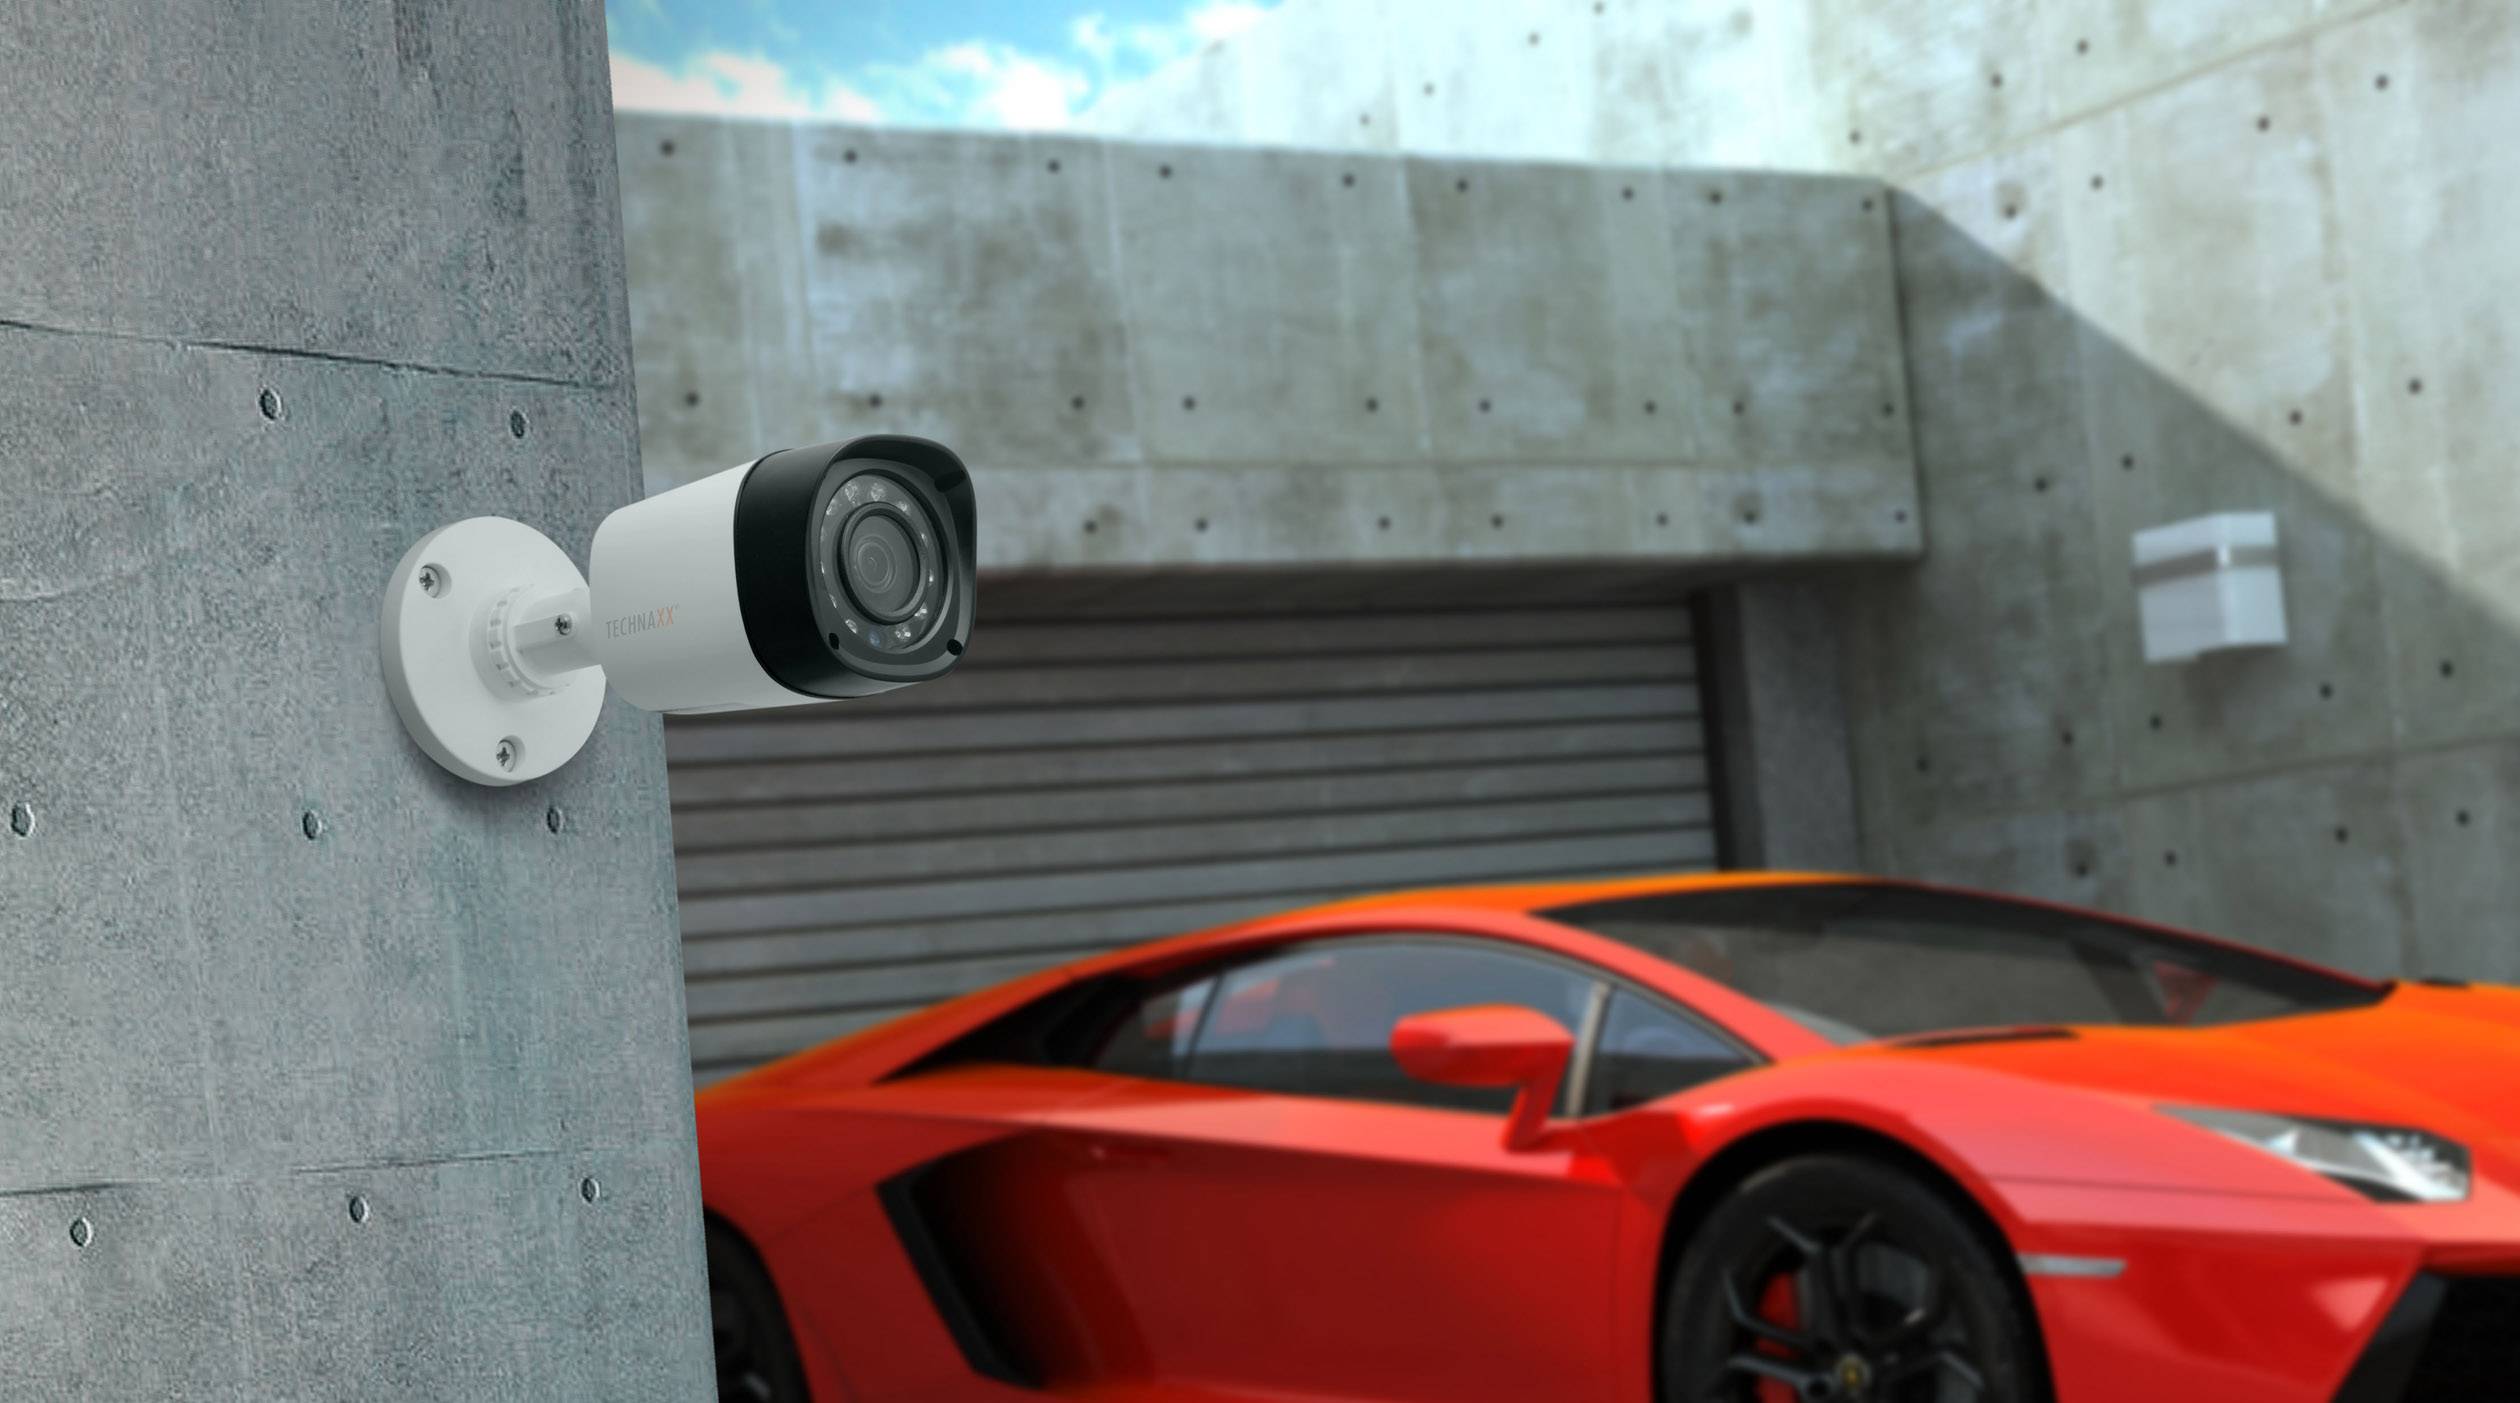 Kamery do monitoringu zapewniające wszechstronne widzenie